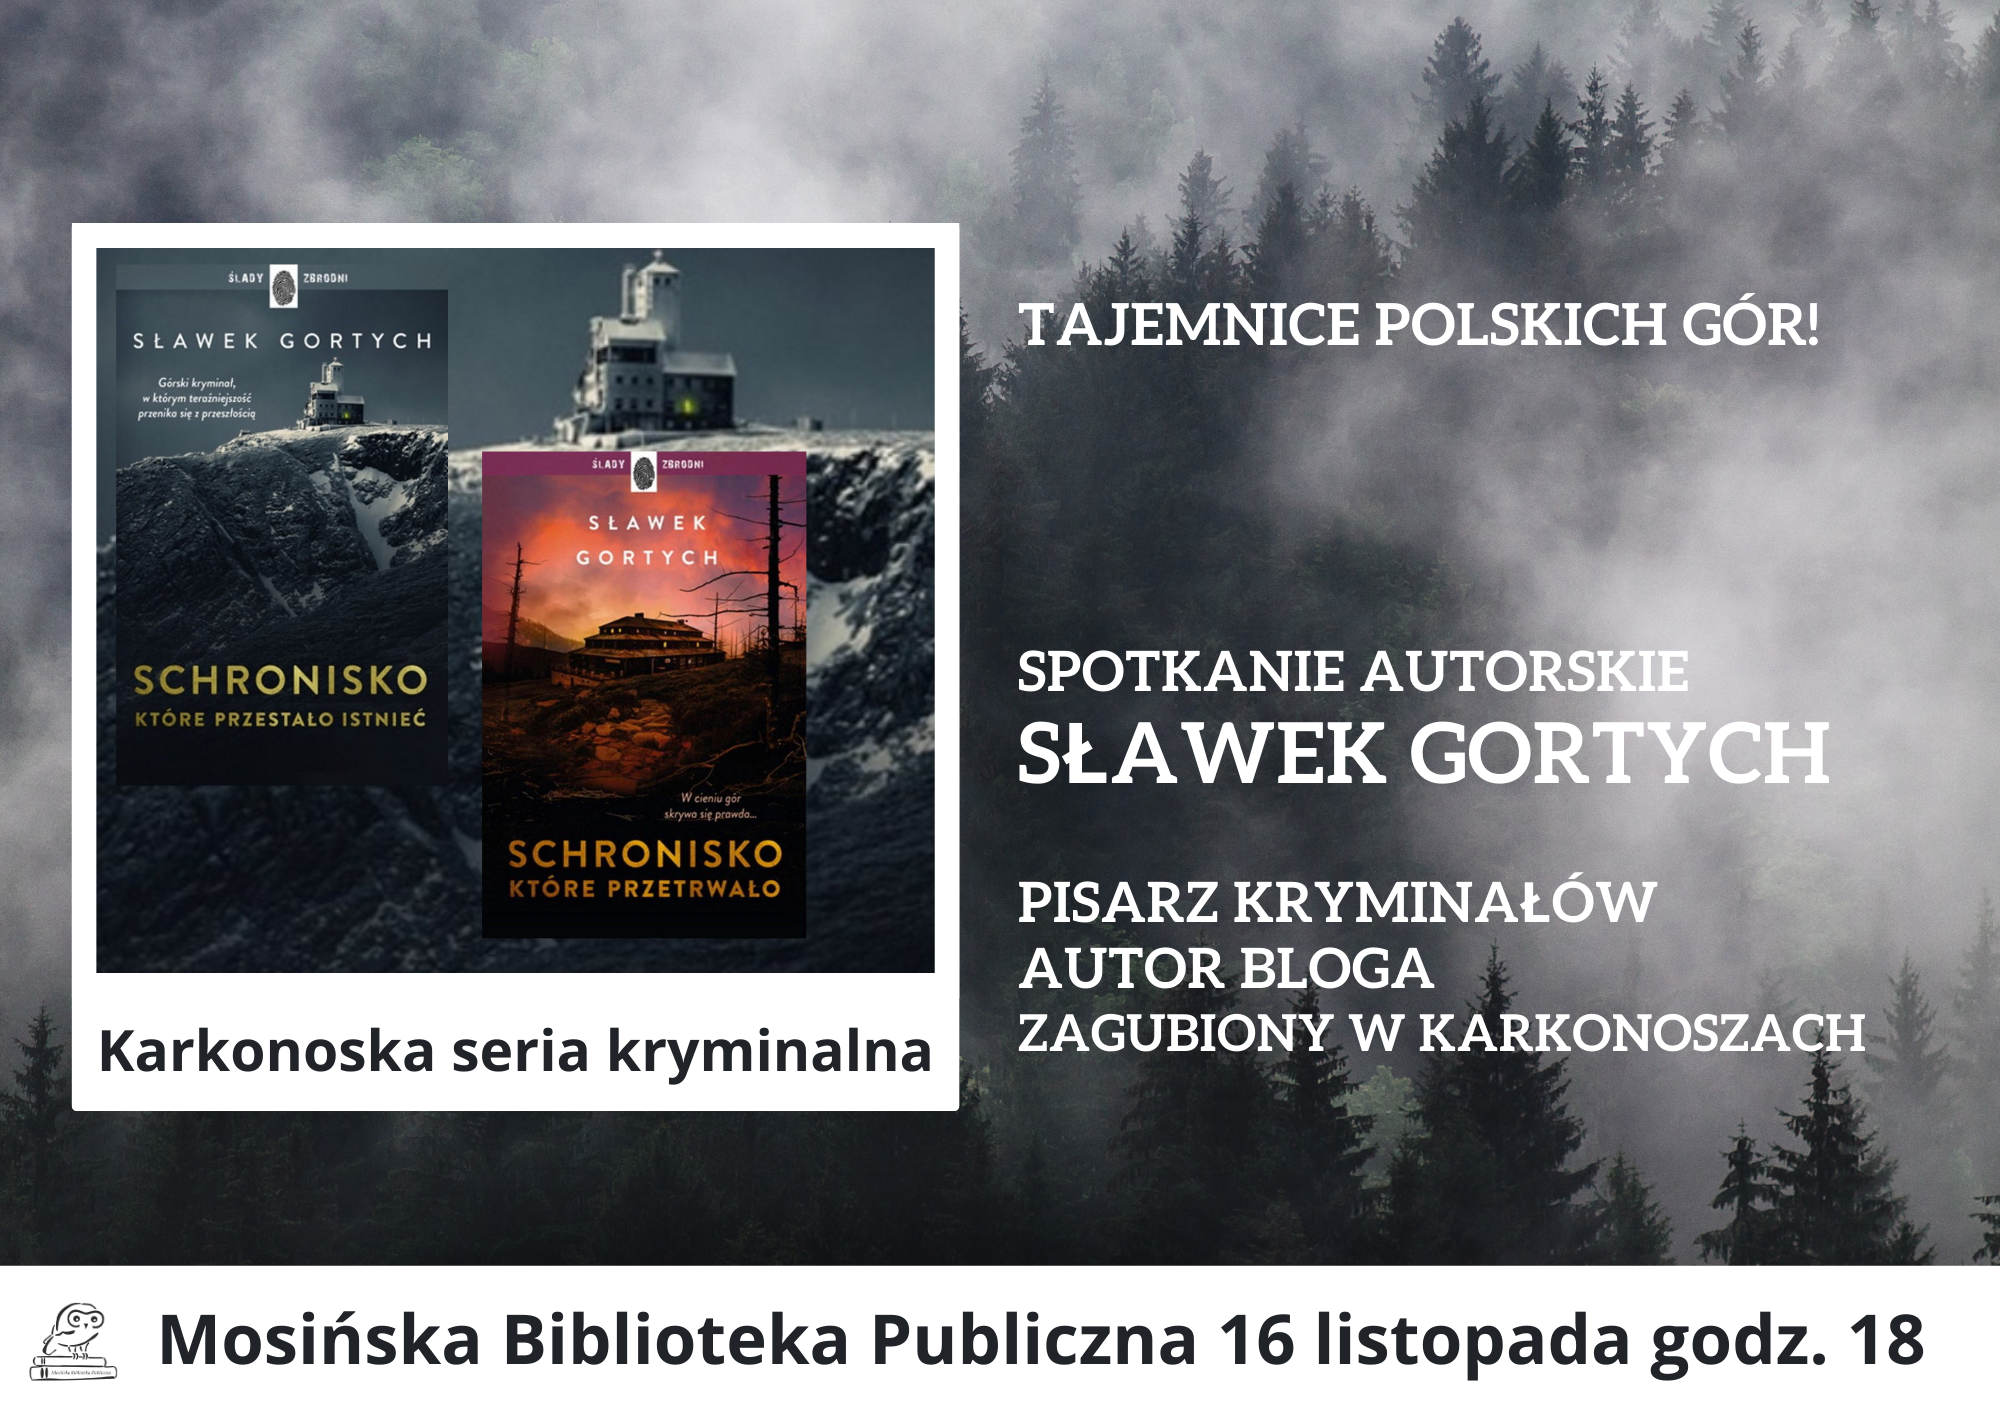 Plakat zapraszający na spotkanie z pisarzem Sławkiem Gortychem. Przedstawia ilustrację czarno-białych gór, na tle których widnieją okładki dwóch książek o Karkonoszach.